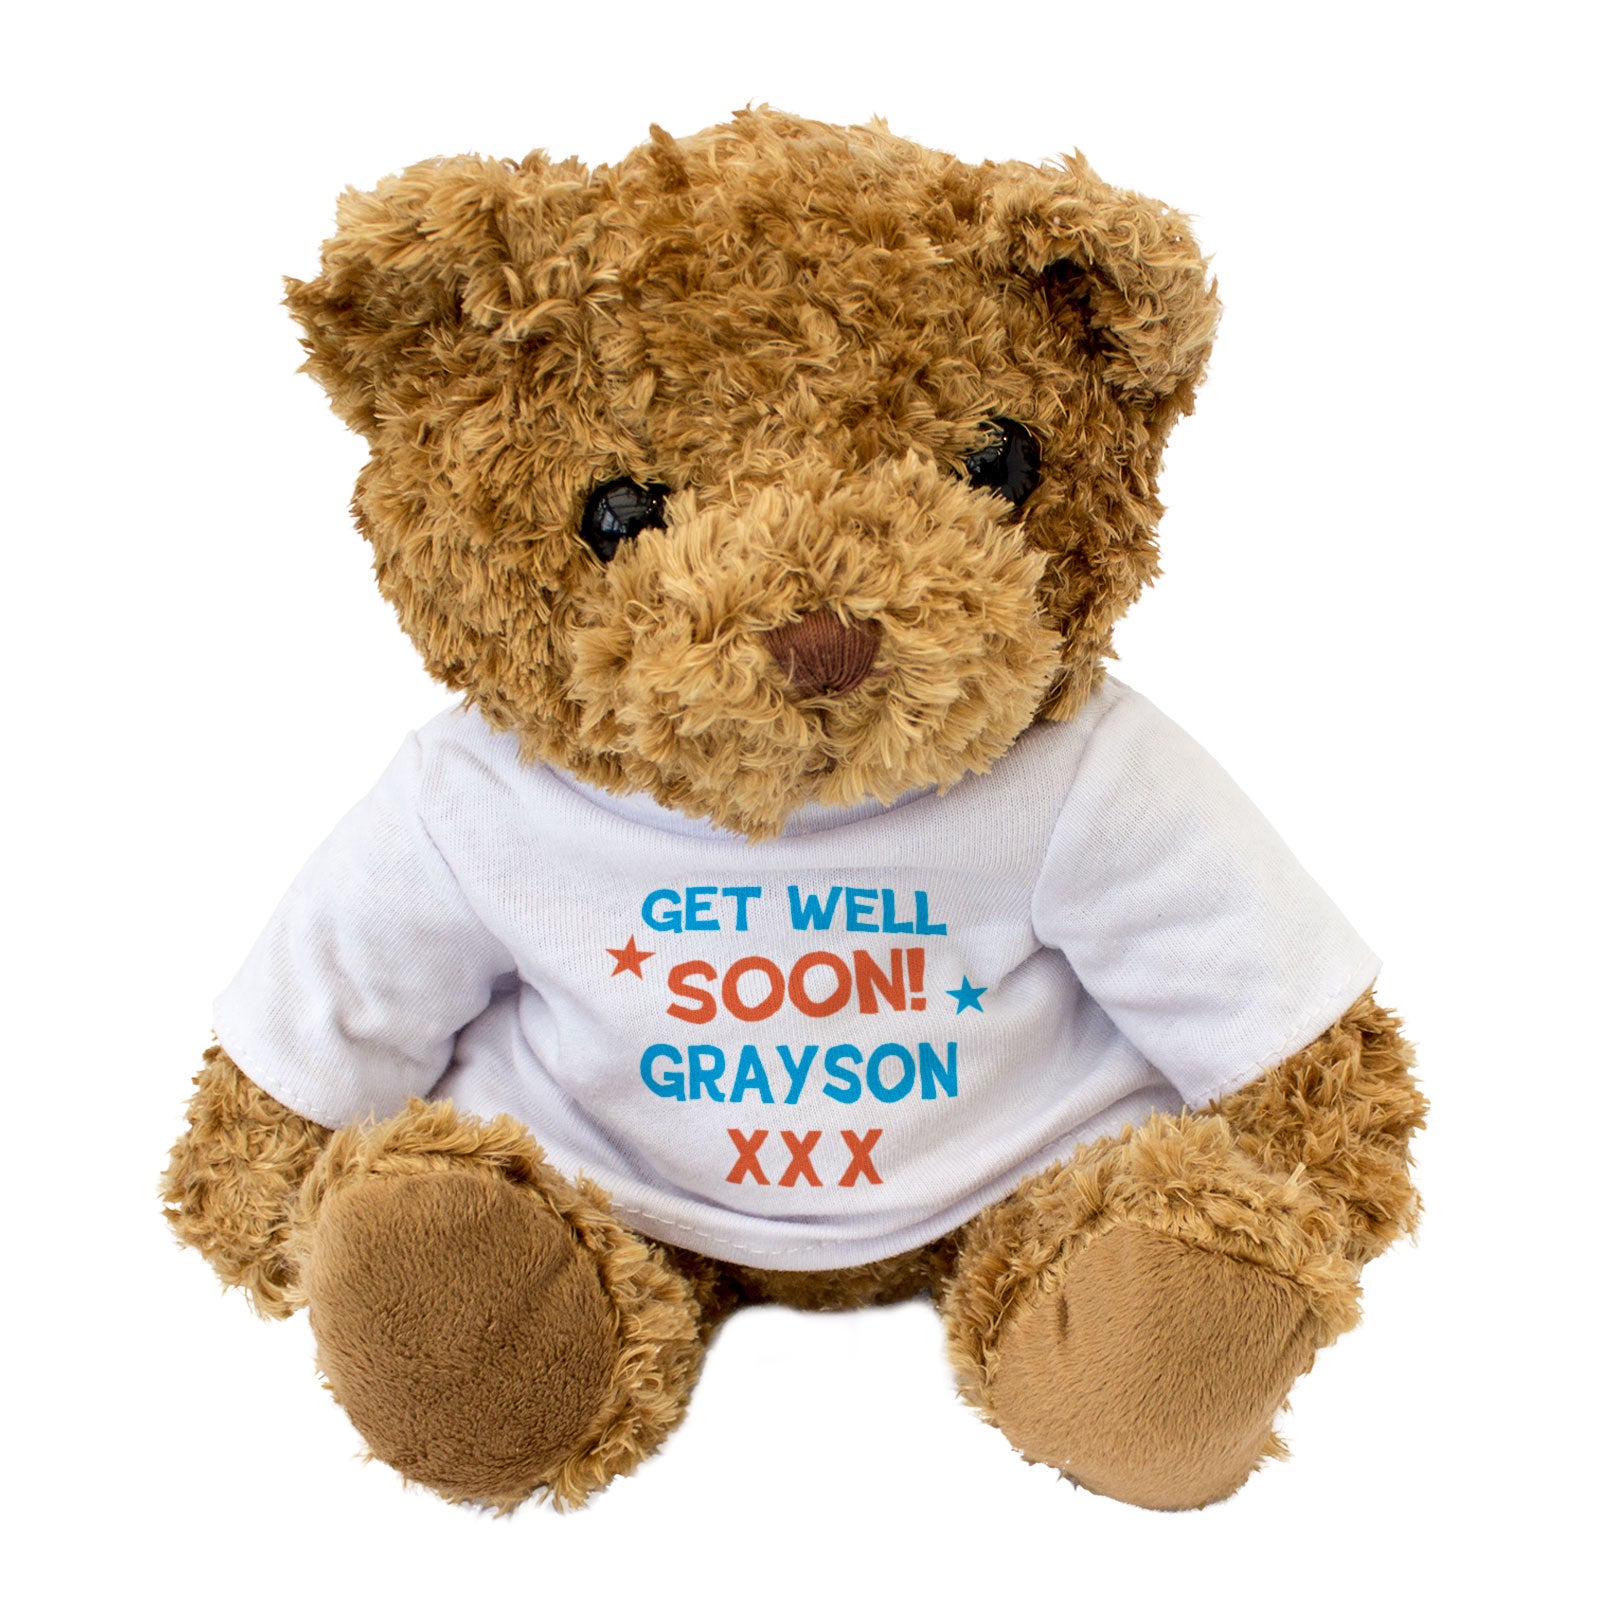 Get Well Soon Grayson - Teddy Bear